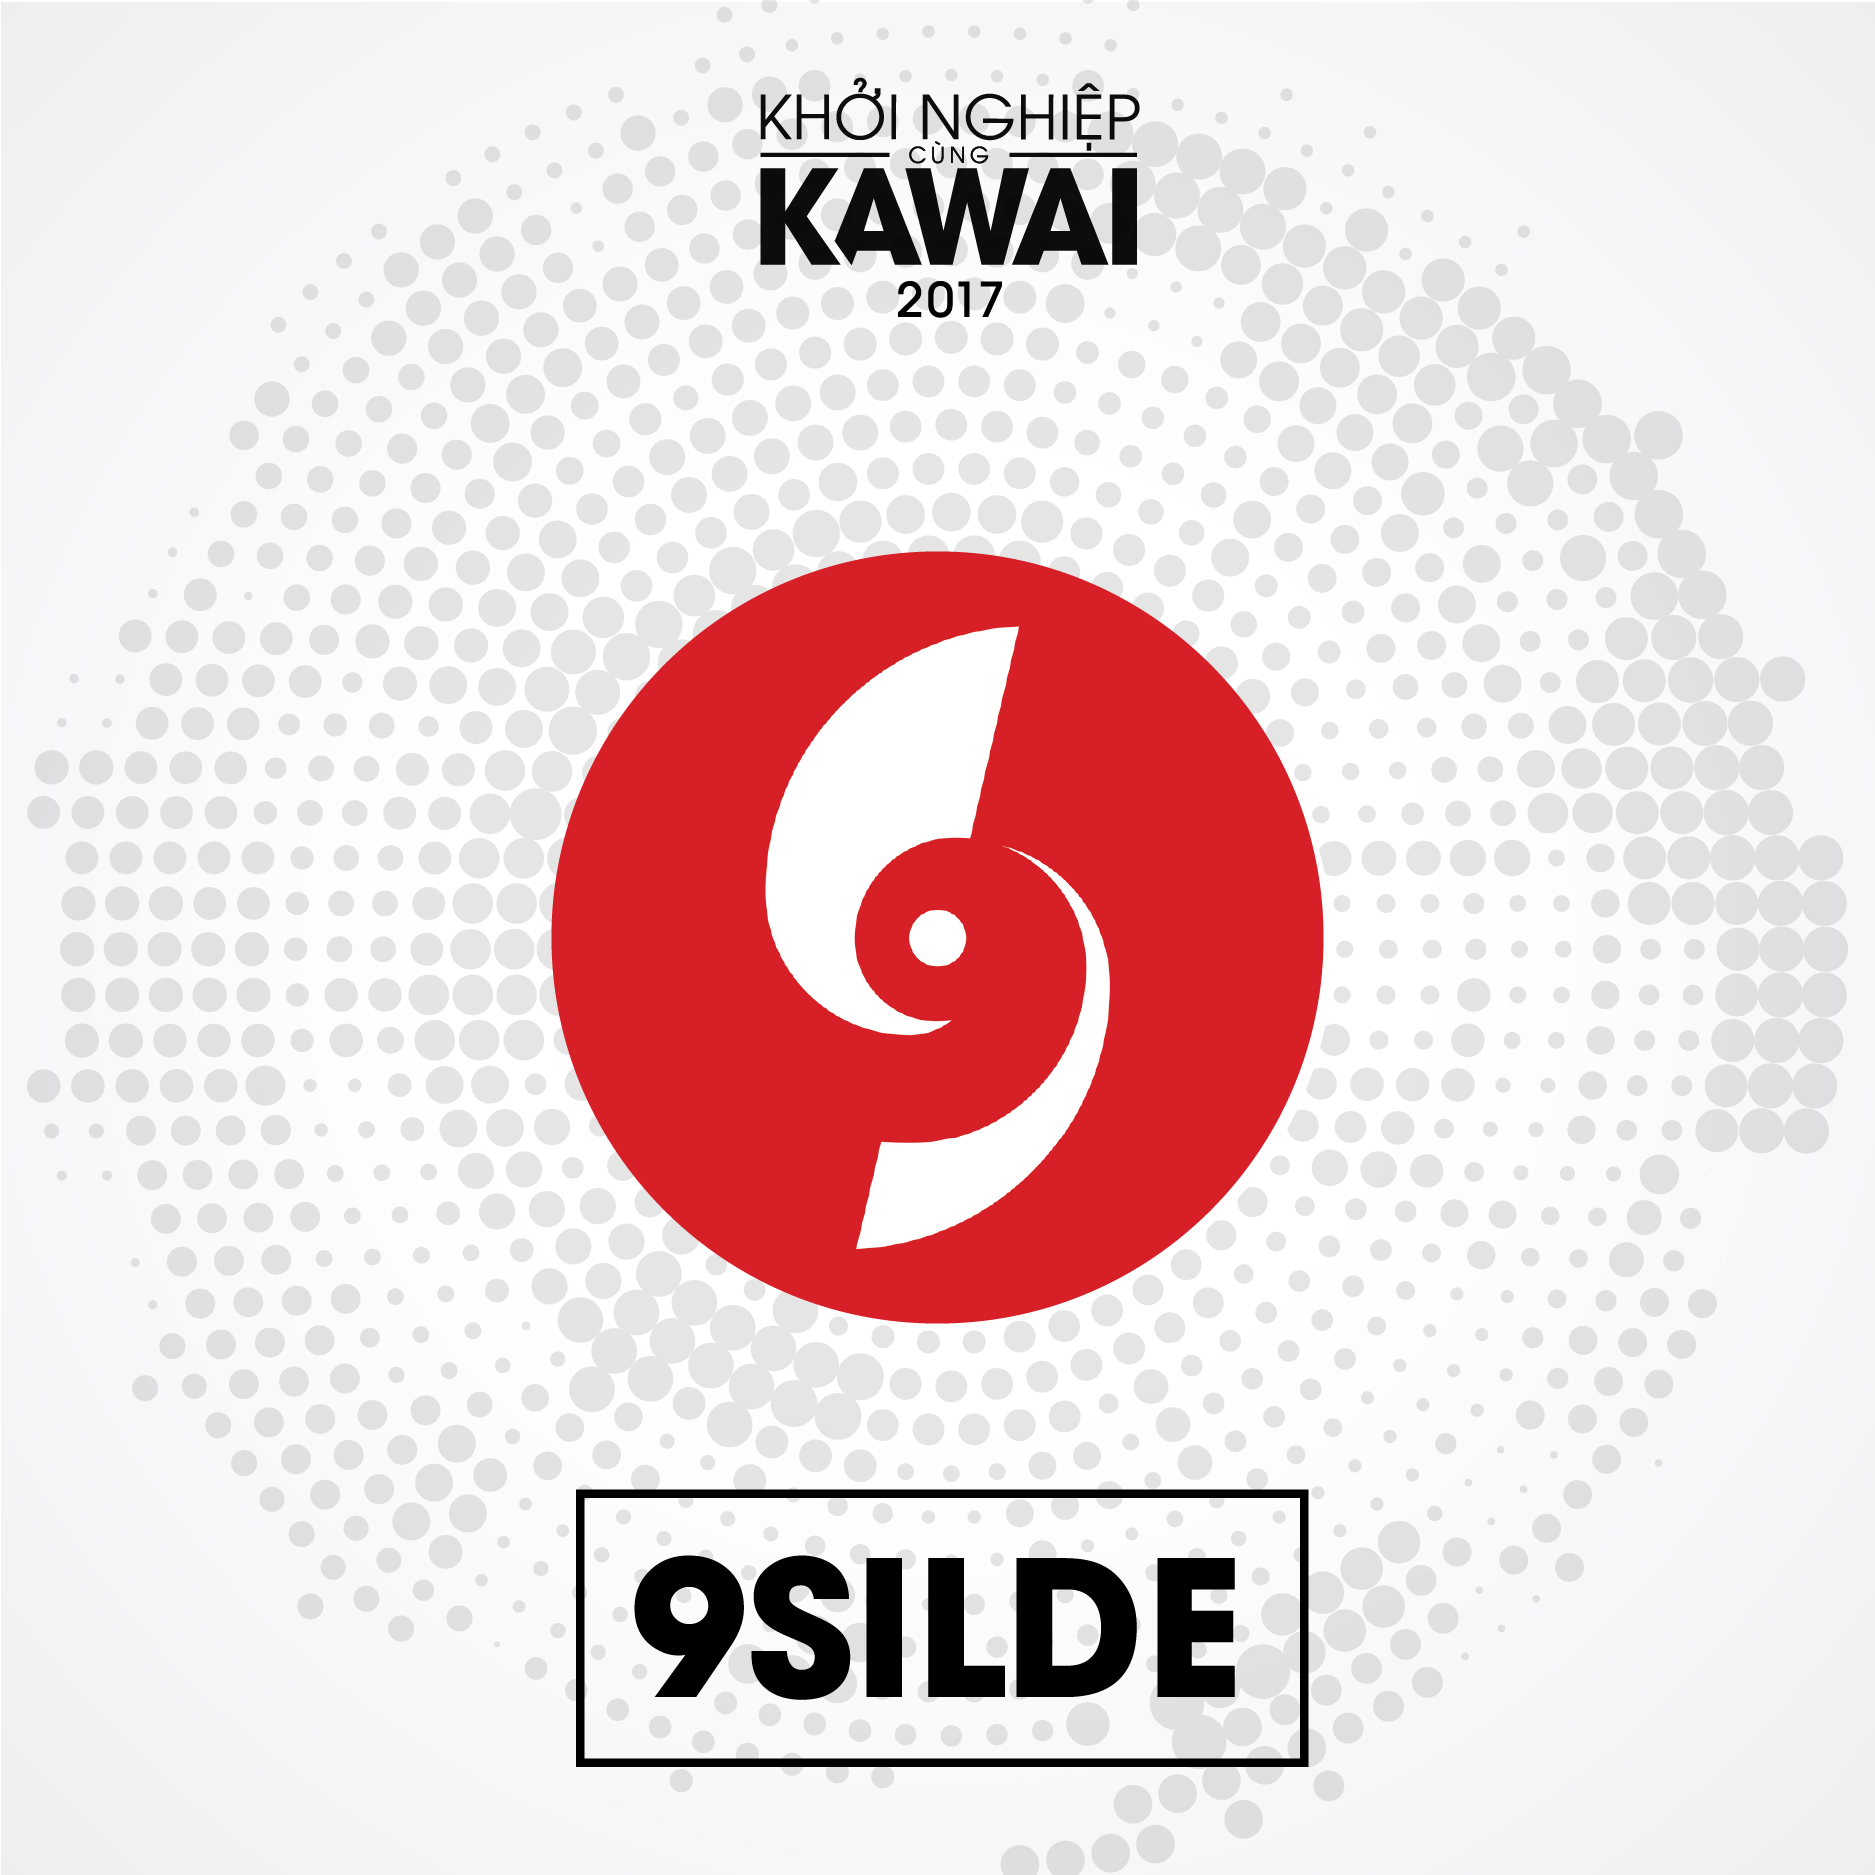 9Slide - Khóa học thiết kế dành cho thuyết trình và truyền thông